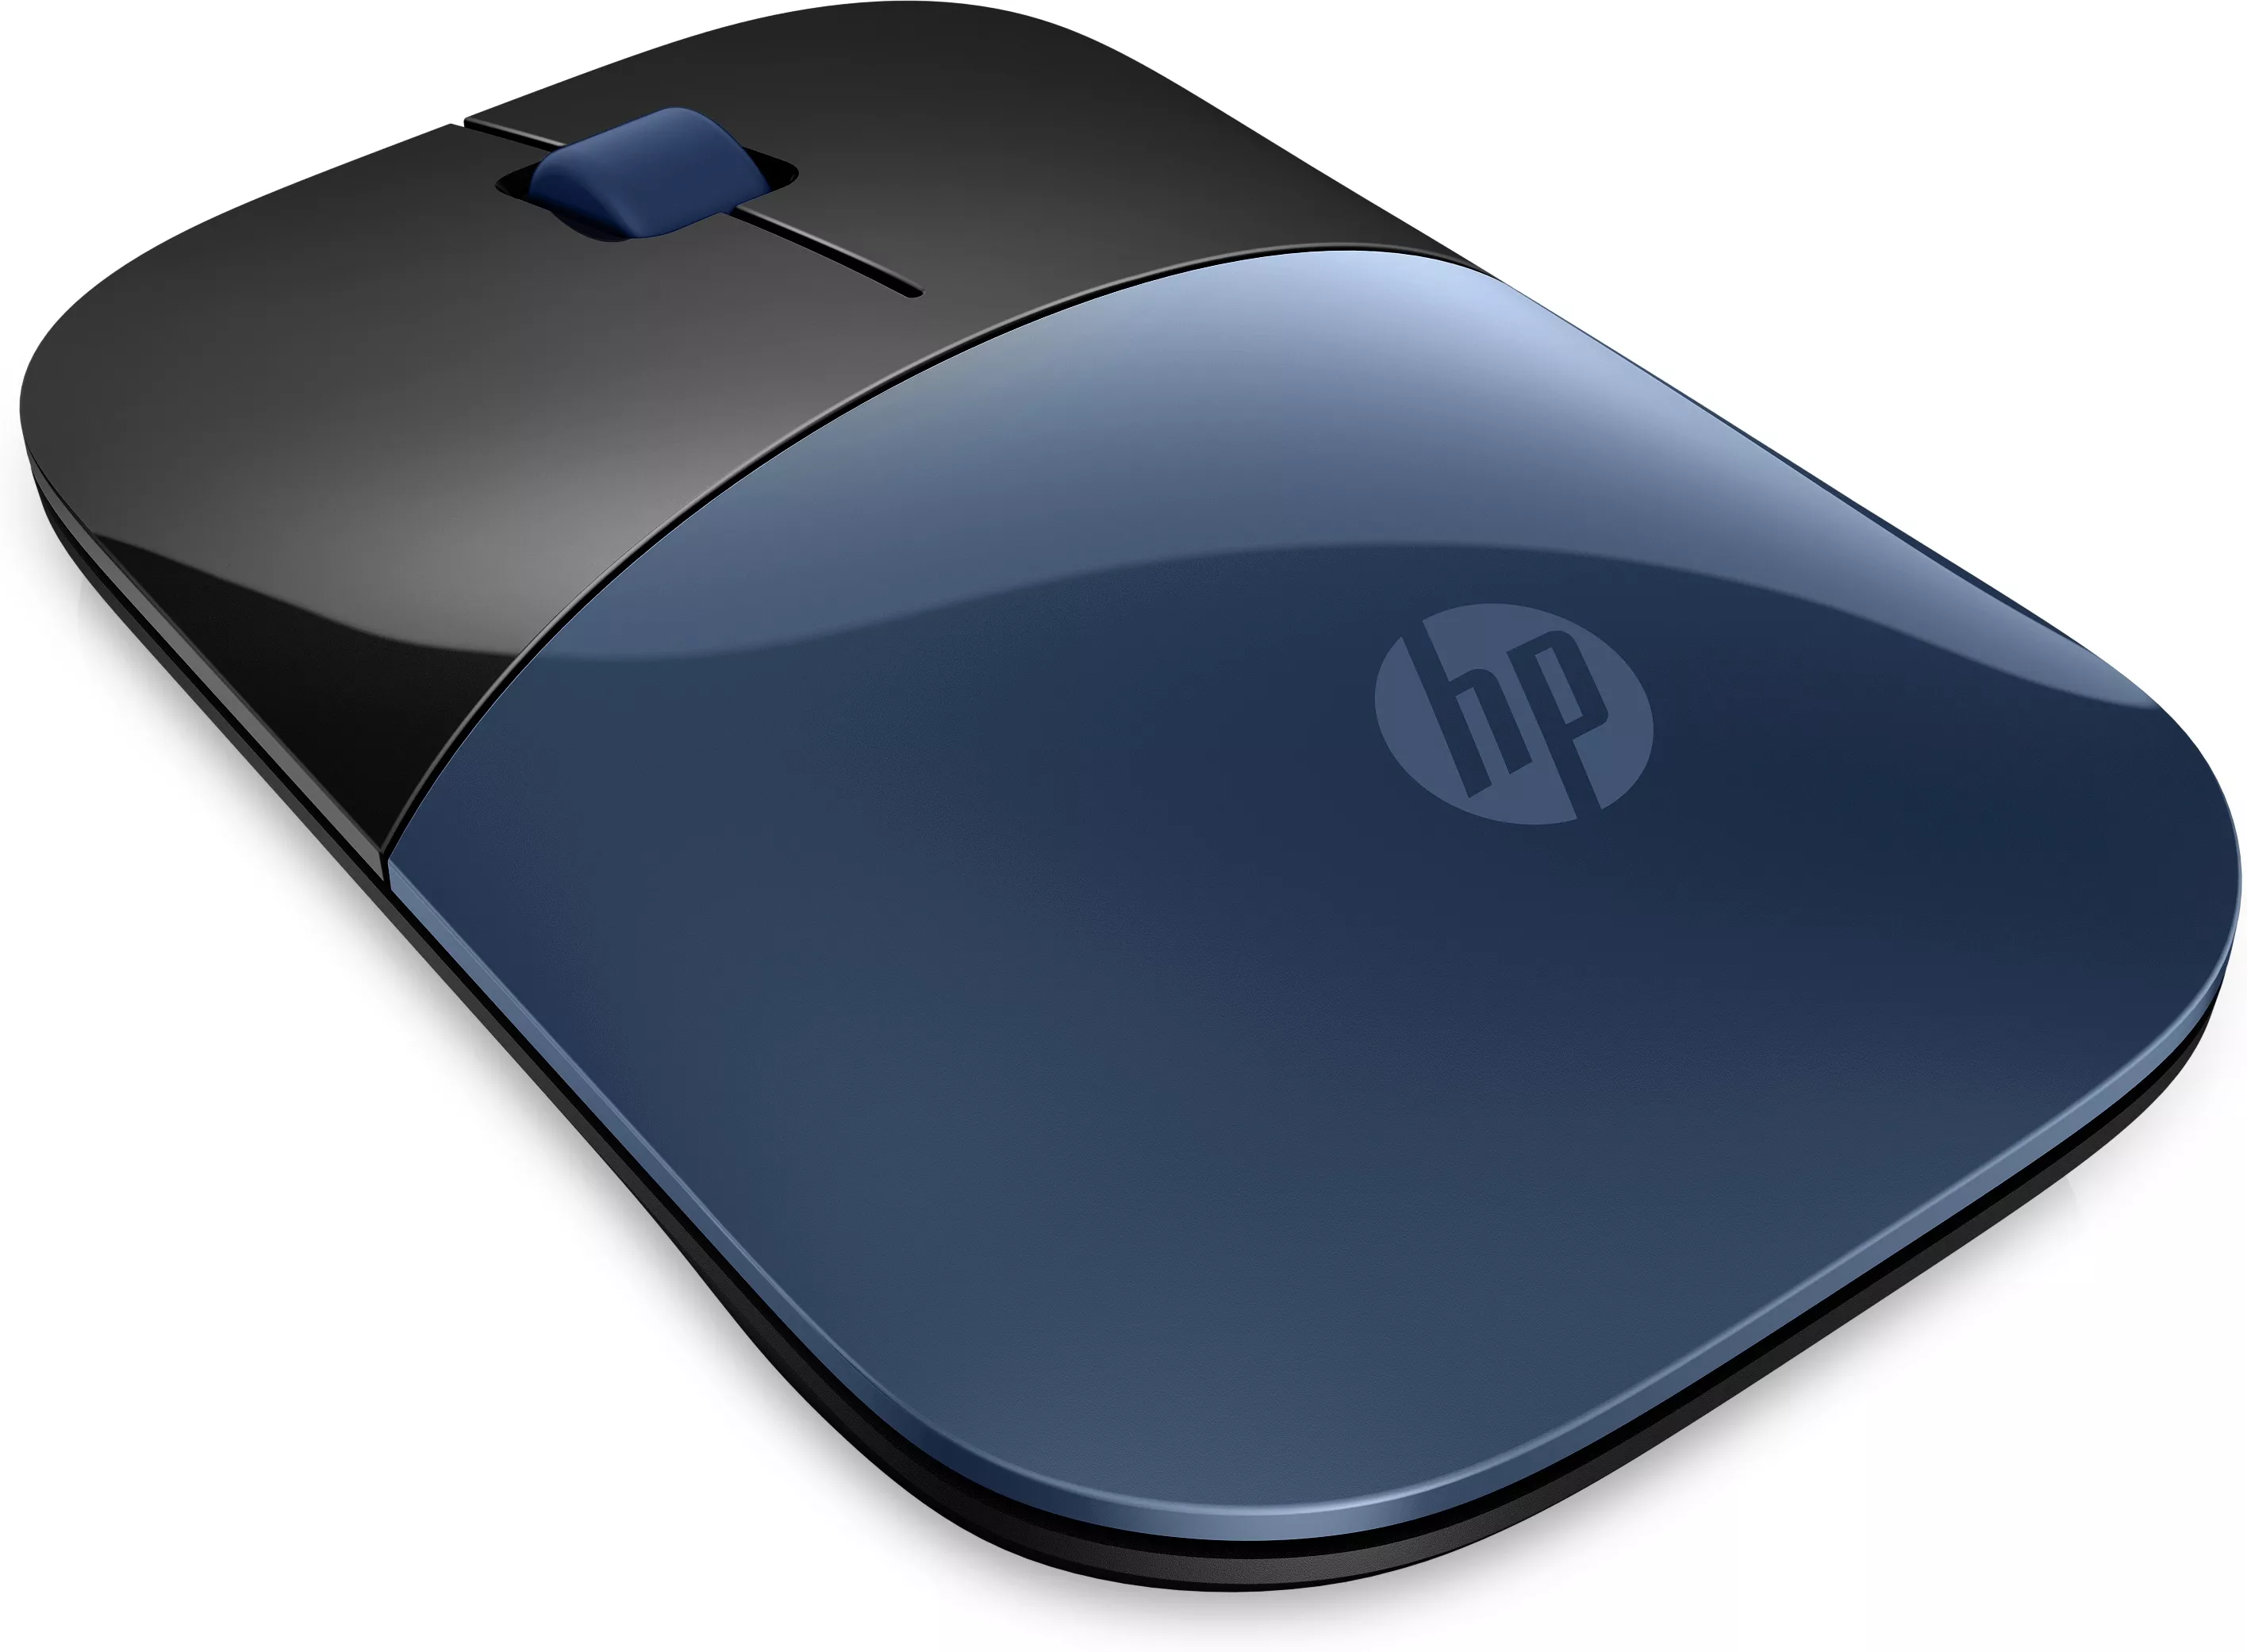 Vente HP Z3700 Wireless Mouse - Lumiere Blue HP au meilleur prix - visuel 2